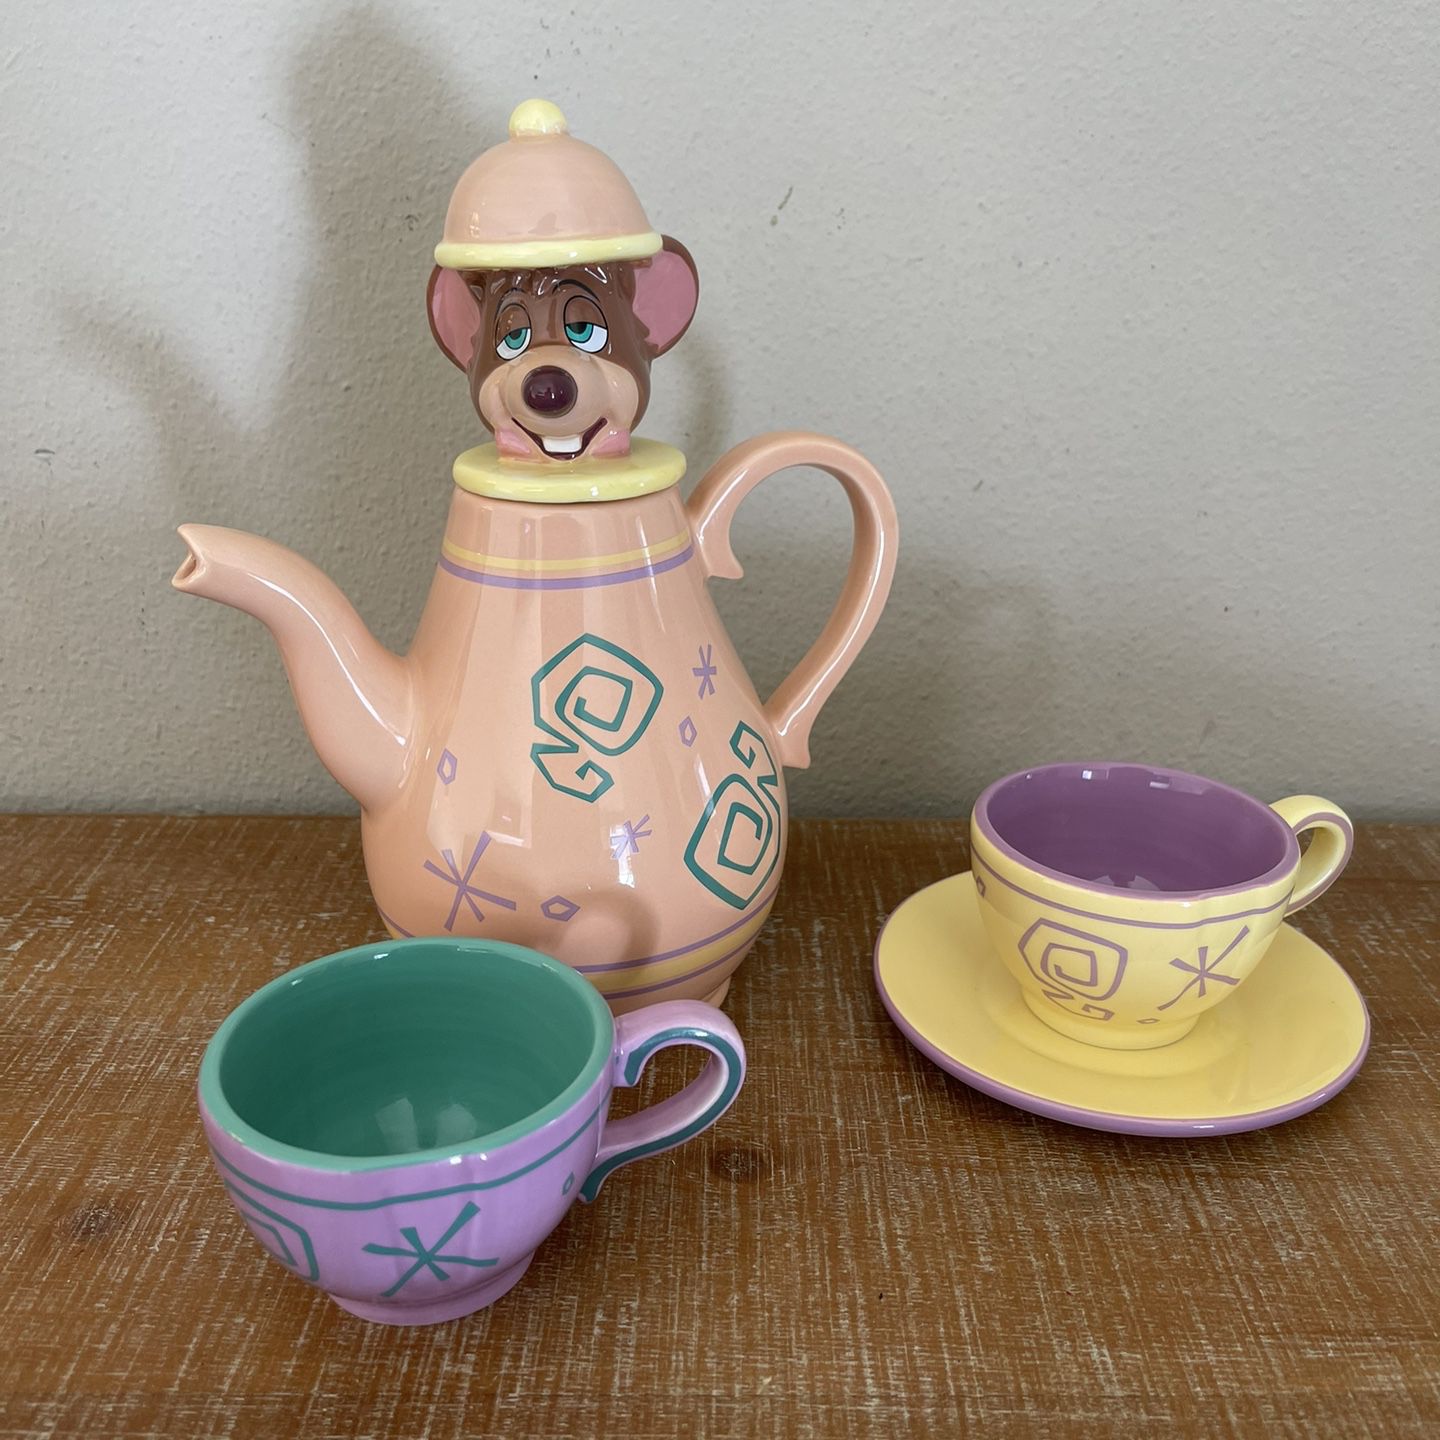 DISNEY DORMOUSE TEA SET Alice in Wonderland - TEA POT + 2 CUPS